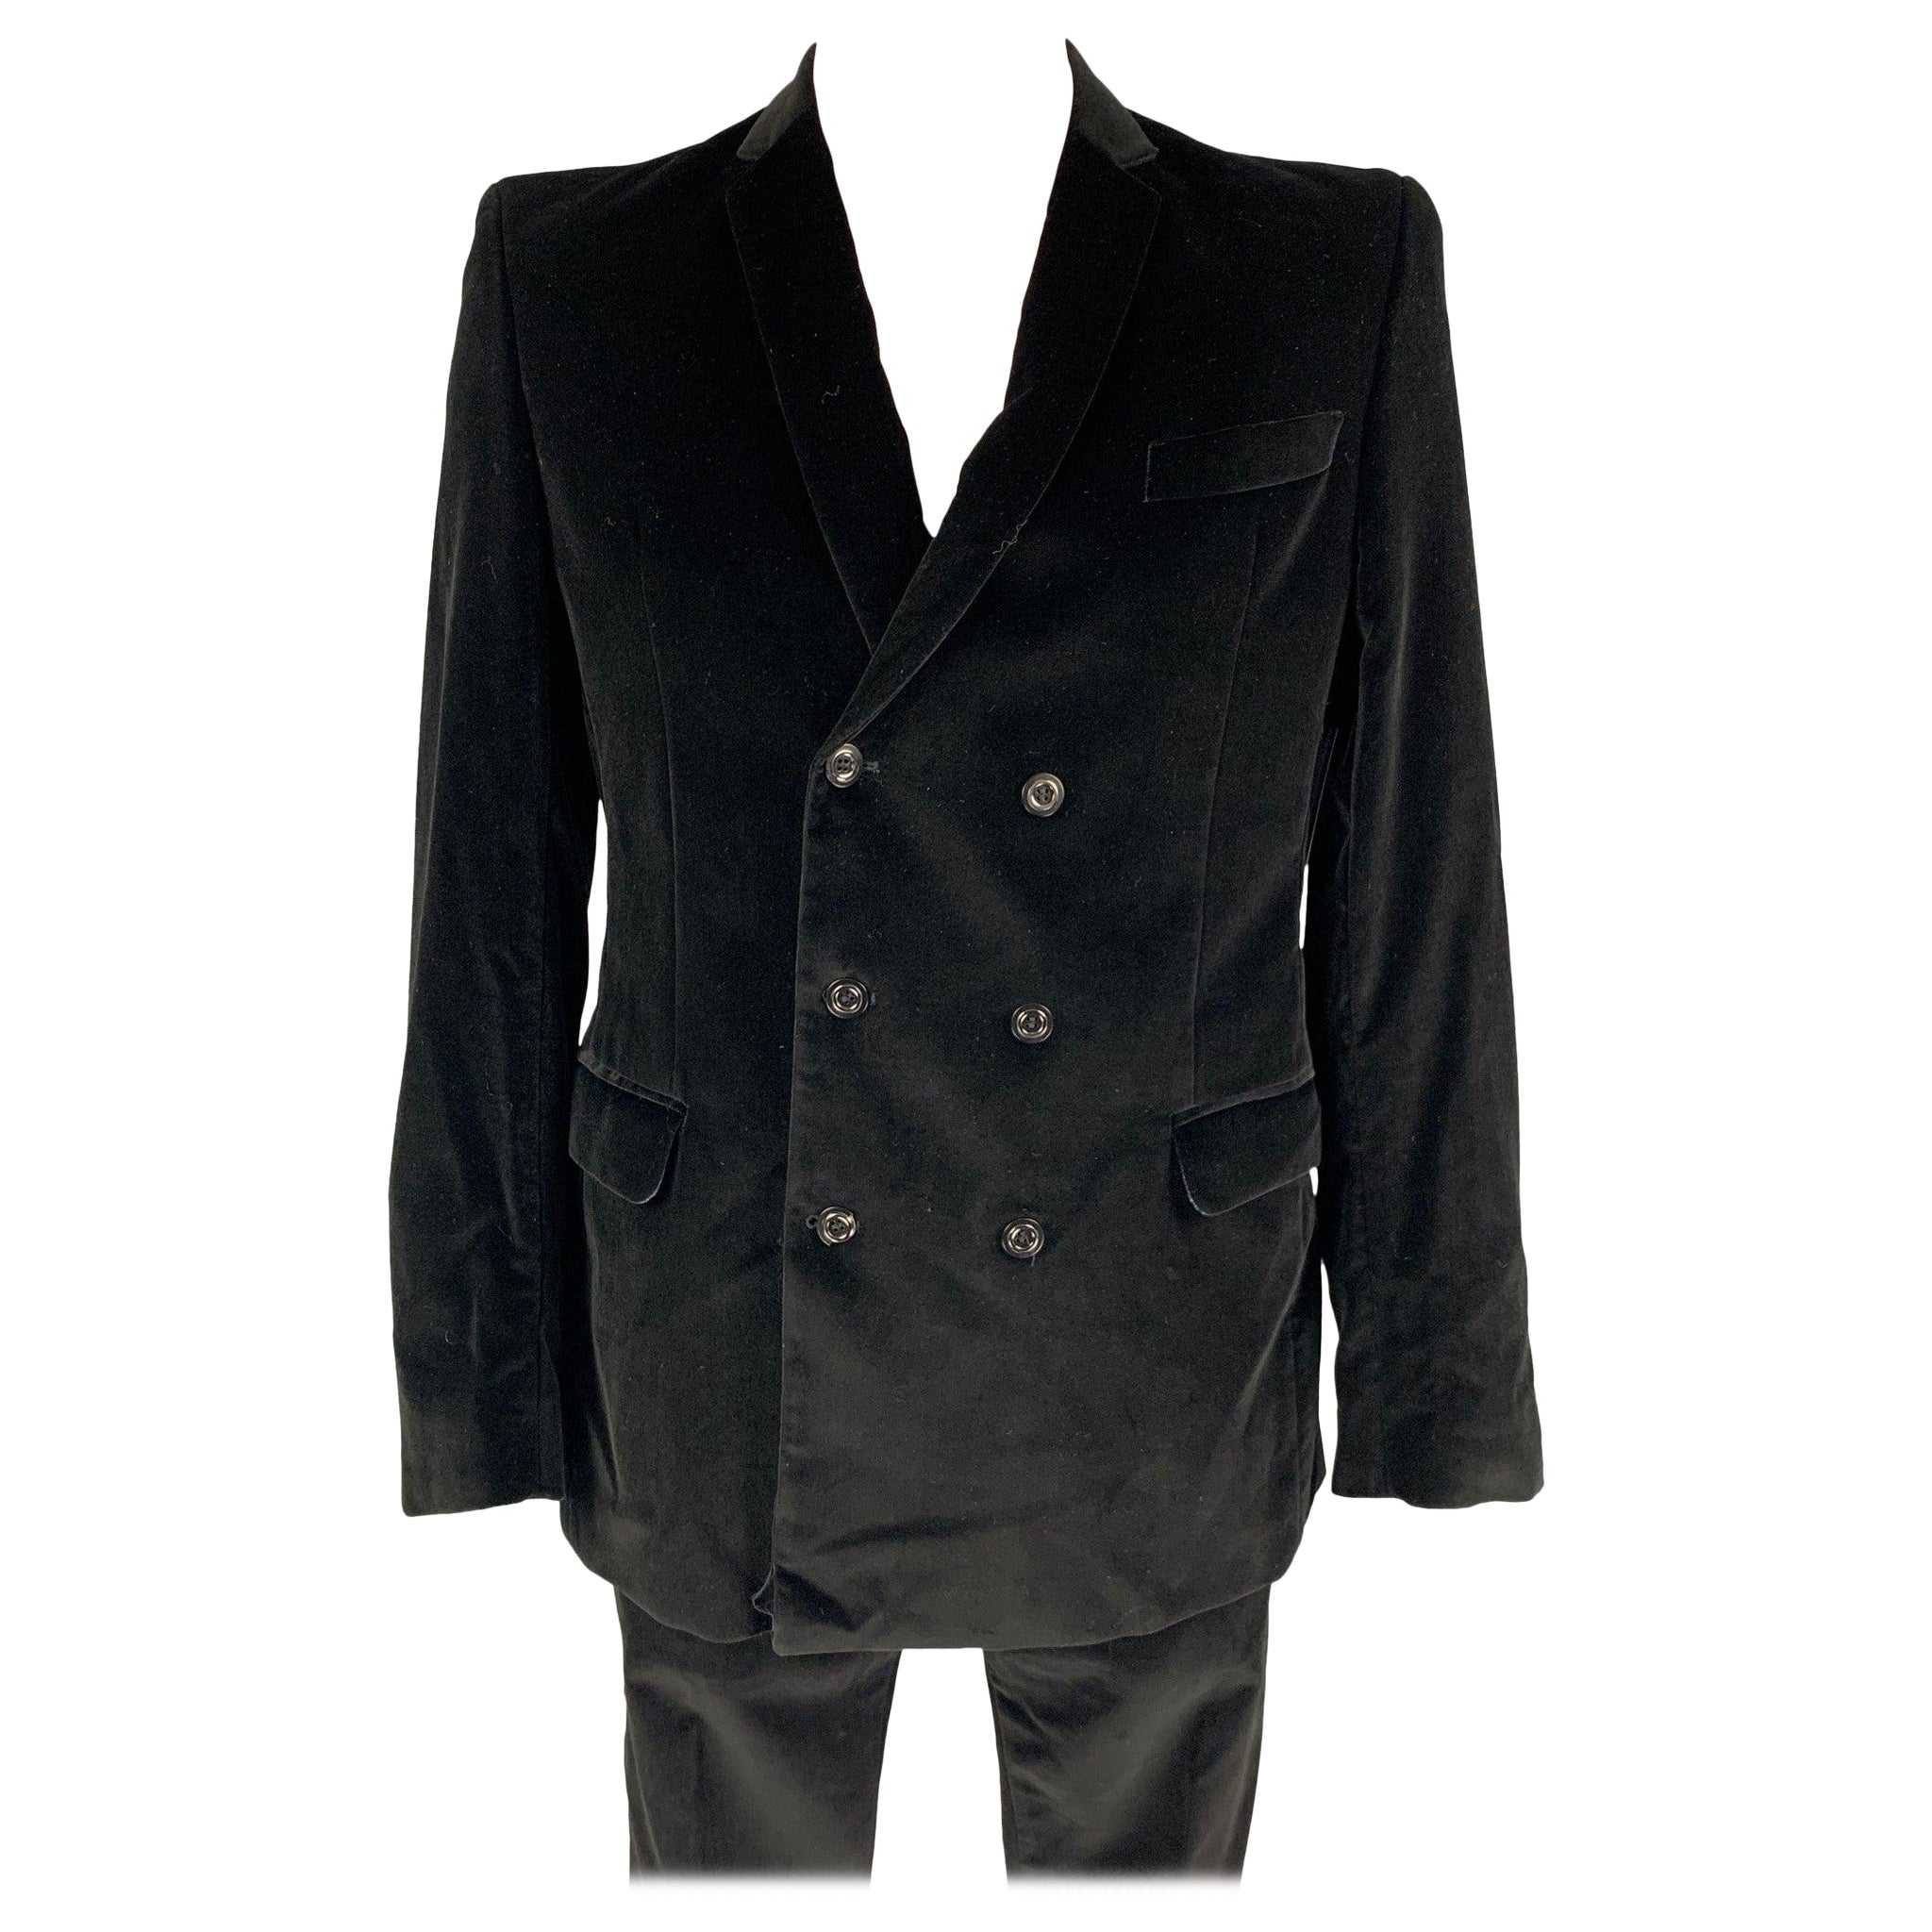 JUST CAVALLI Size 44 Black Velvet Cotton Velvet Notch Lapel Suit For Sale